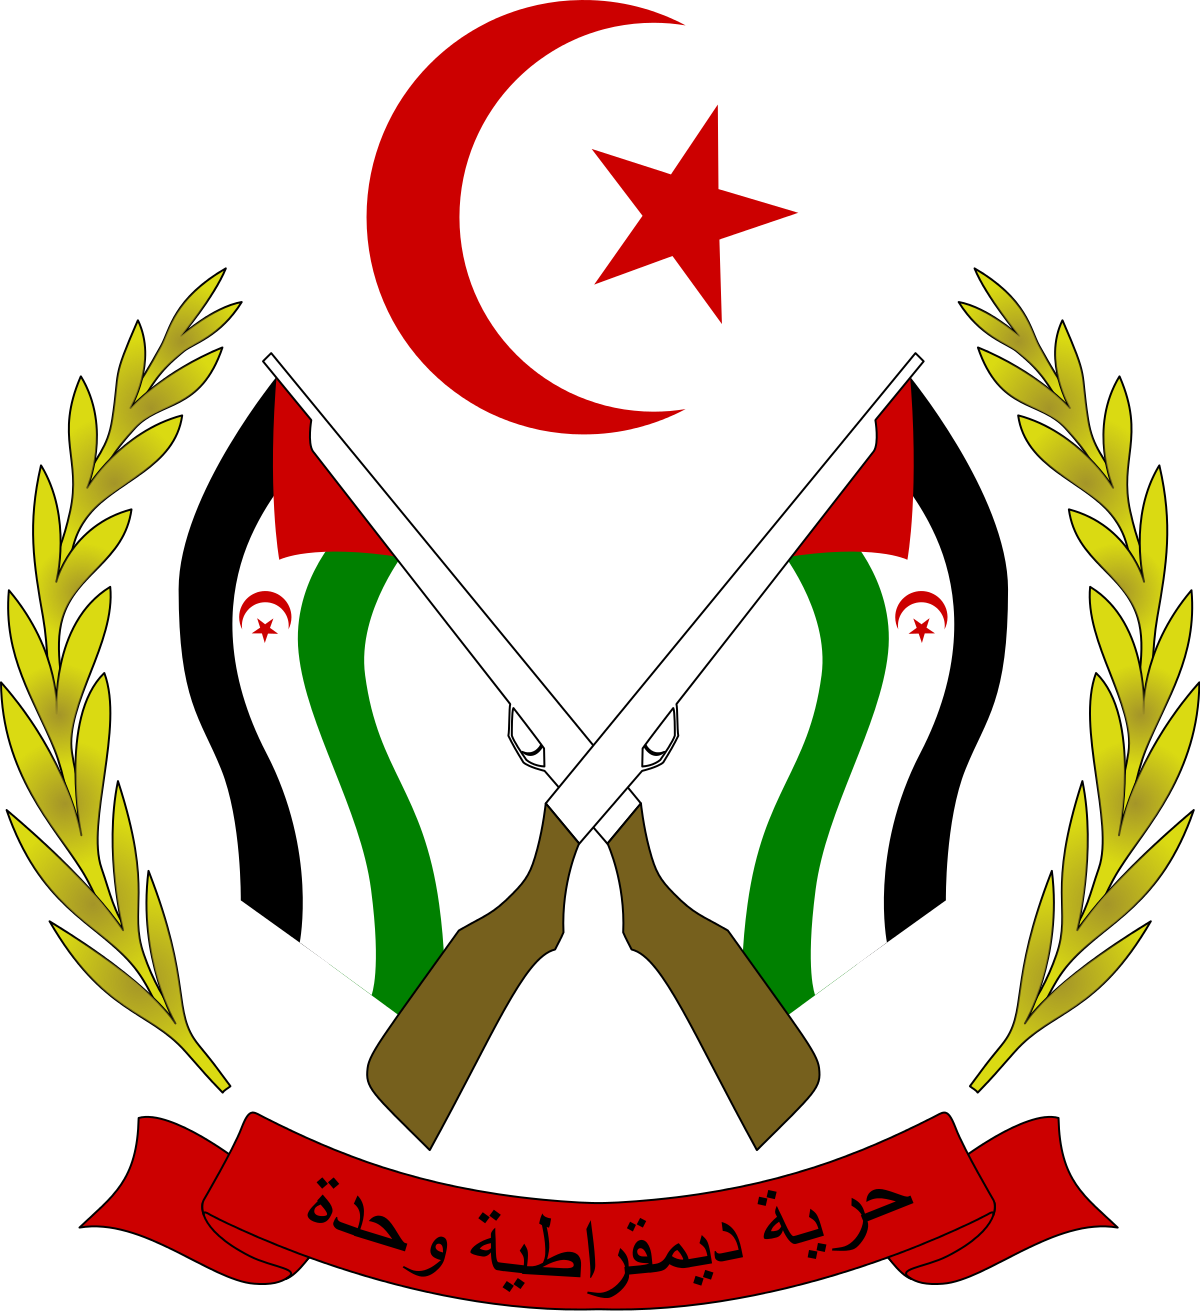 الجمهورية العربية الصحراوية الديمقراطية (2000x2184)